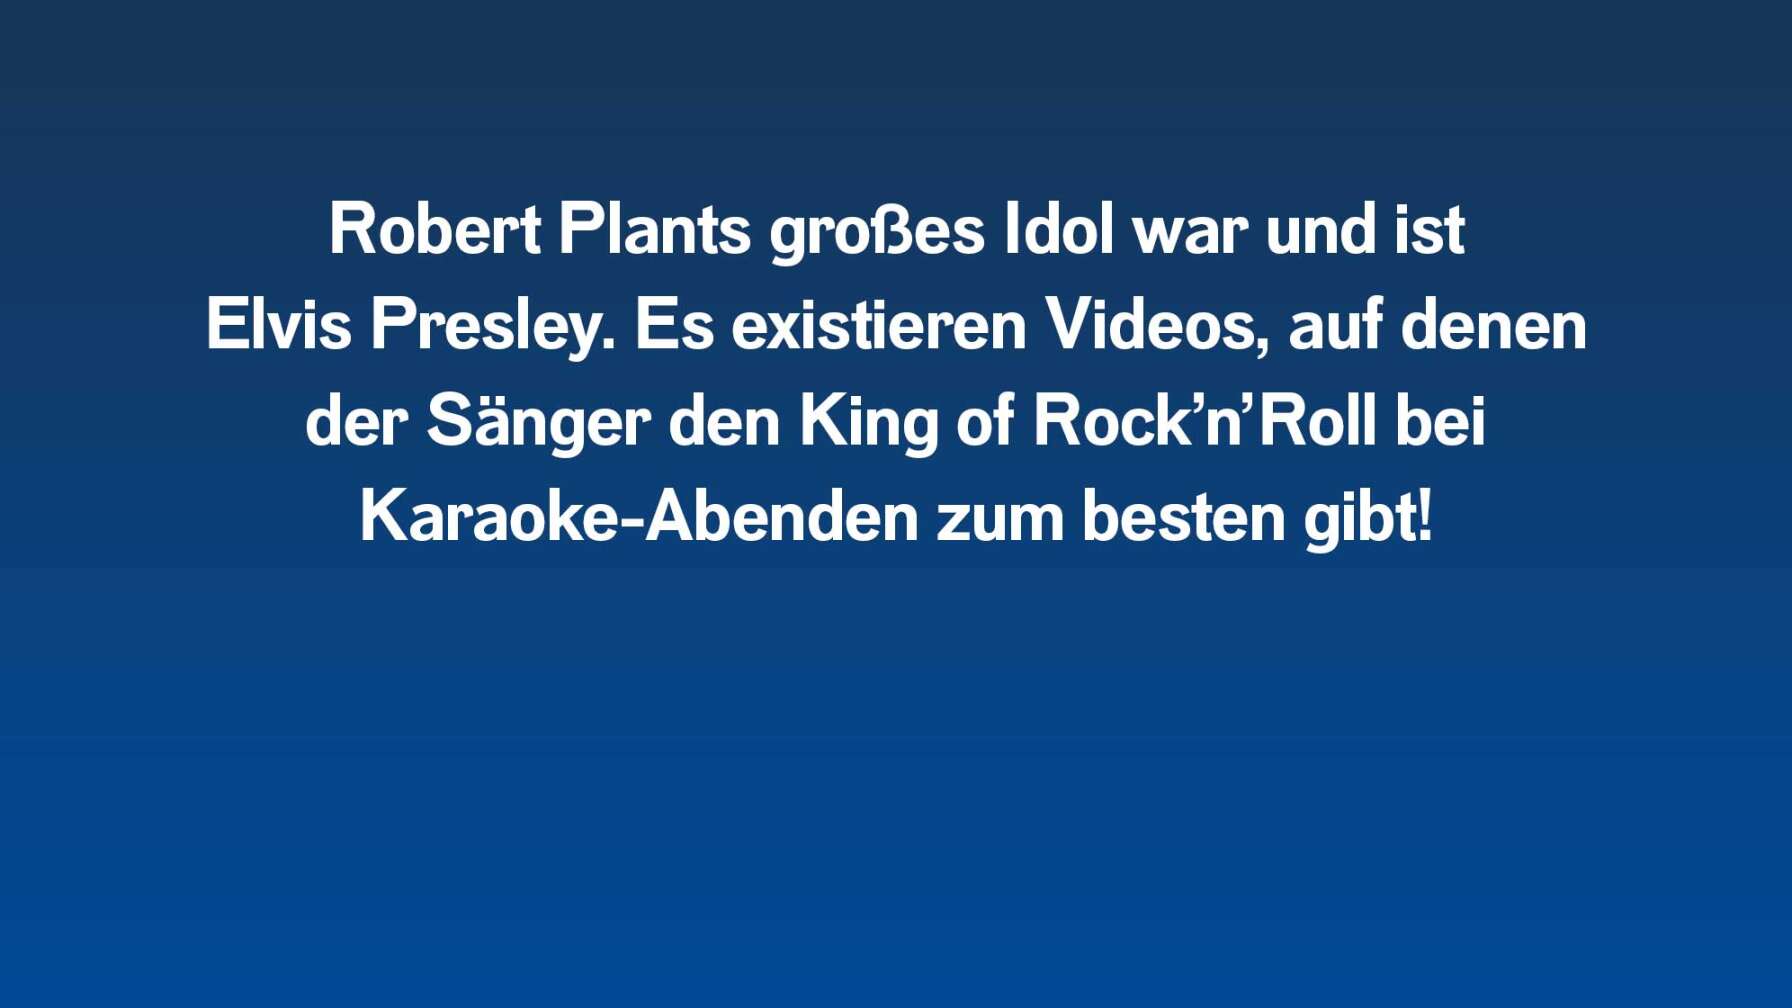 Robert Plants großes Idol war und ist Elvis Presley. Es existieren Videos, auf denen der Sänger den King of Rock’n’Roll bei Karaoke-Abenden zum besten gibt!